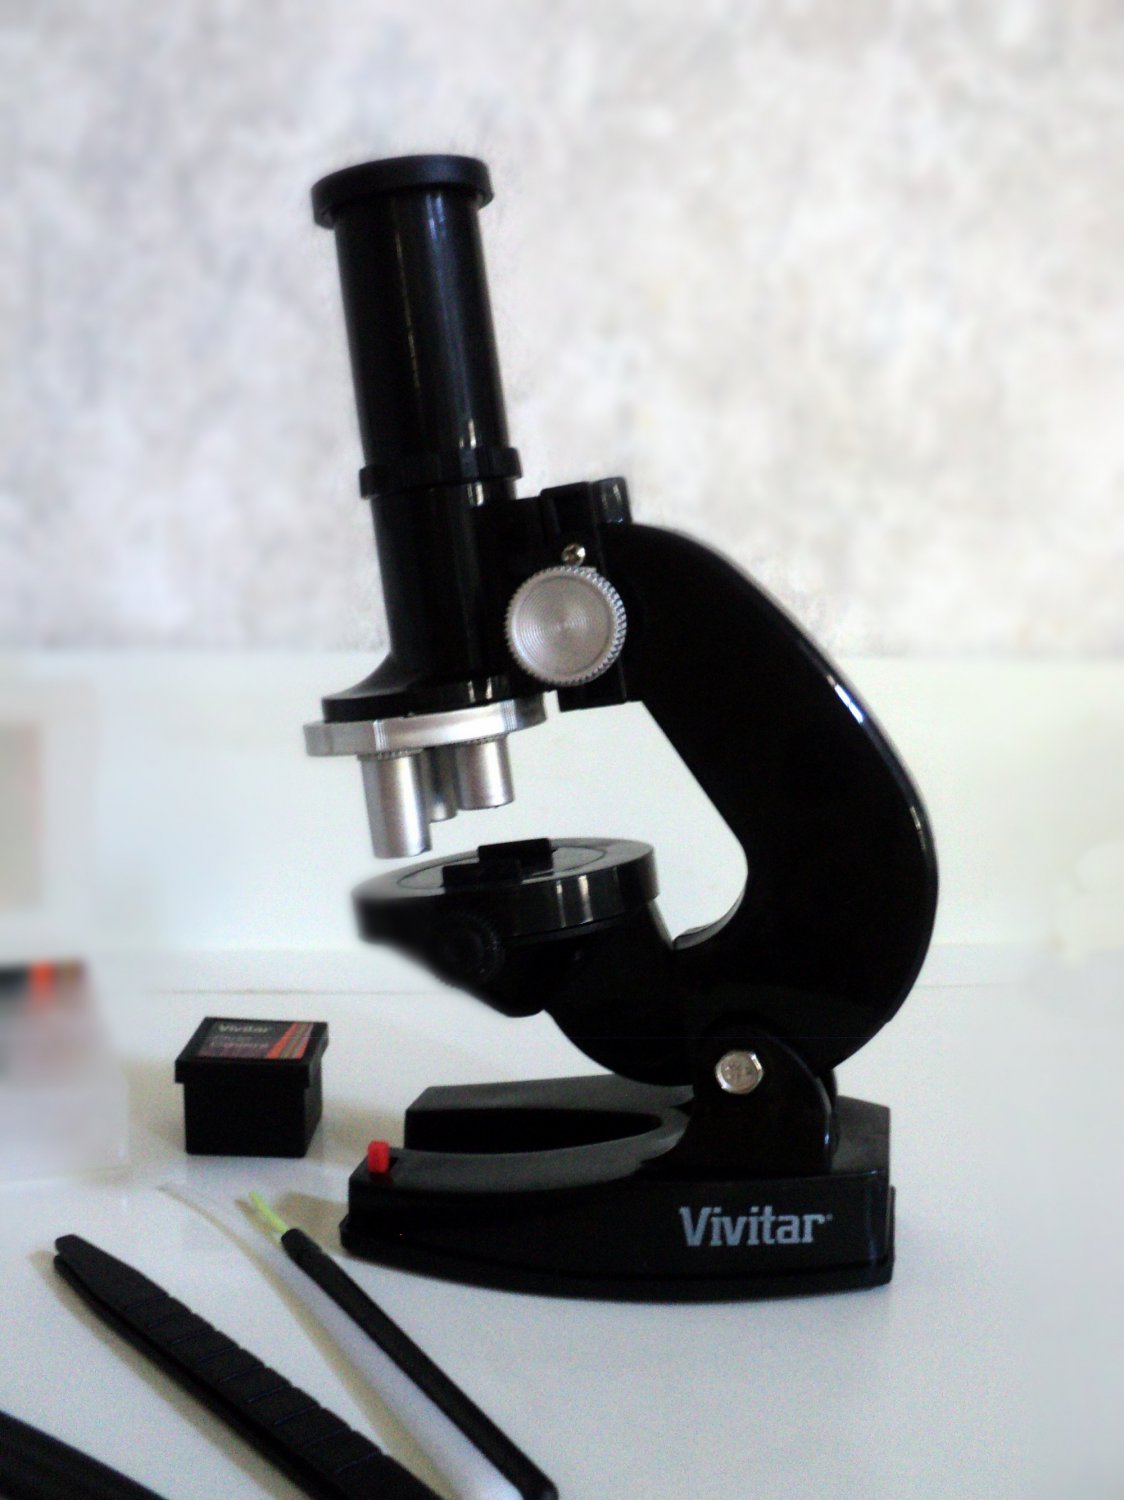 vivitar telescope and microscope starter kit